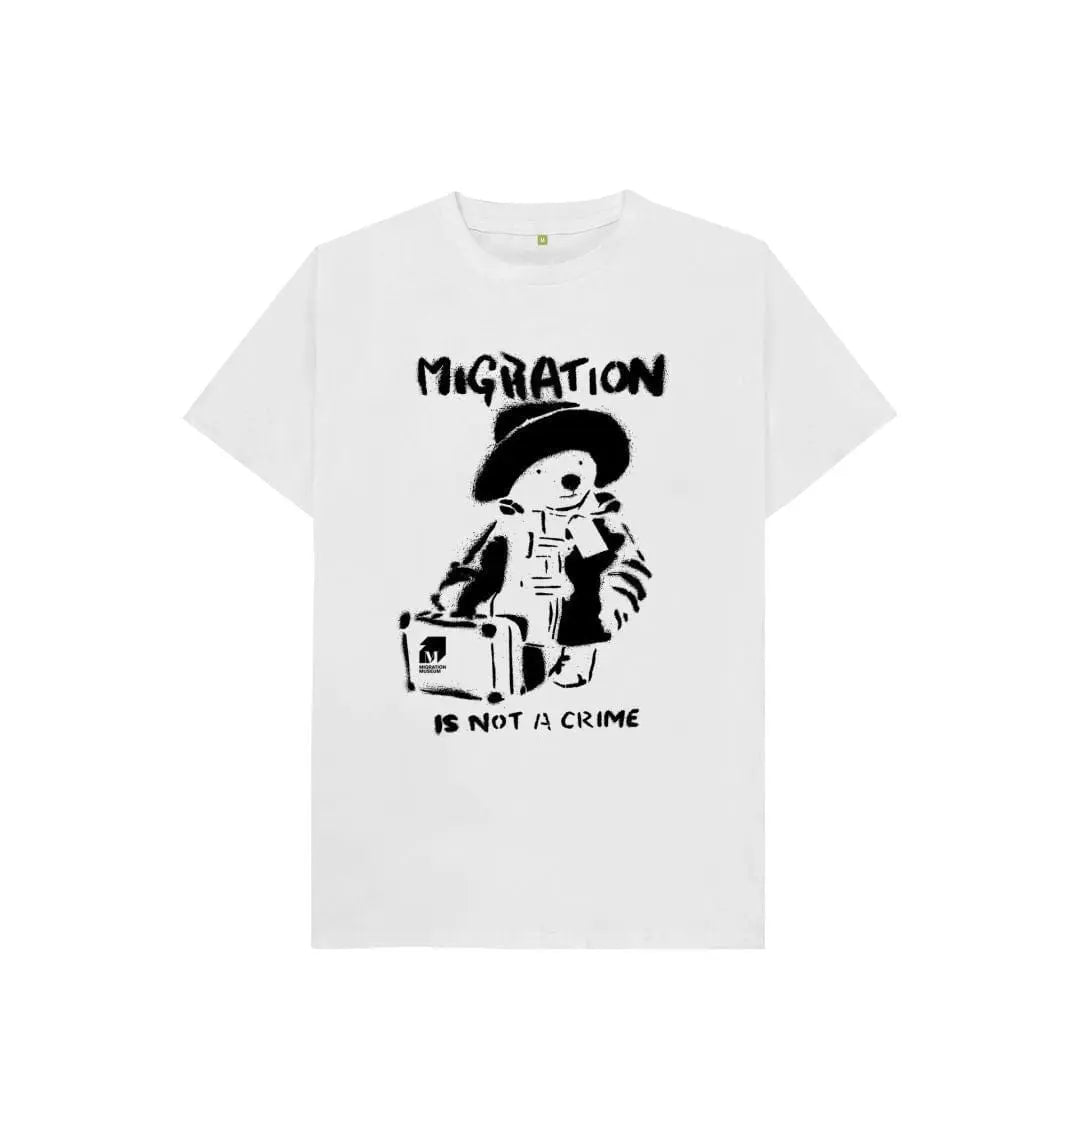 Migration Is Not a Crime - Organic Cotton Children's T-shirt - Migration Museum Shop